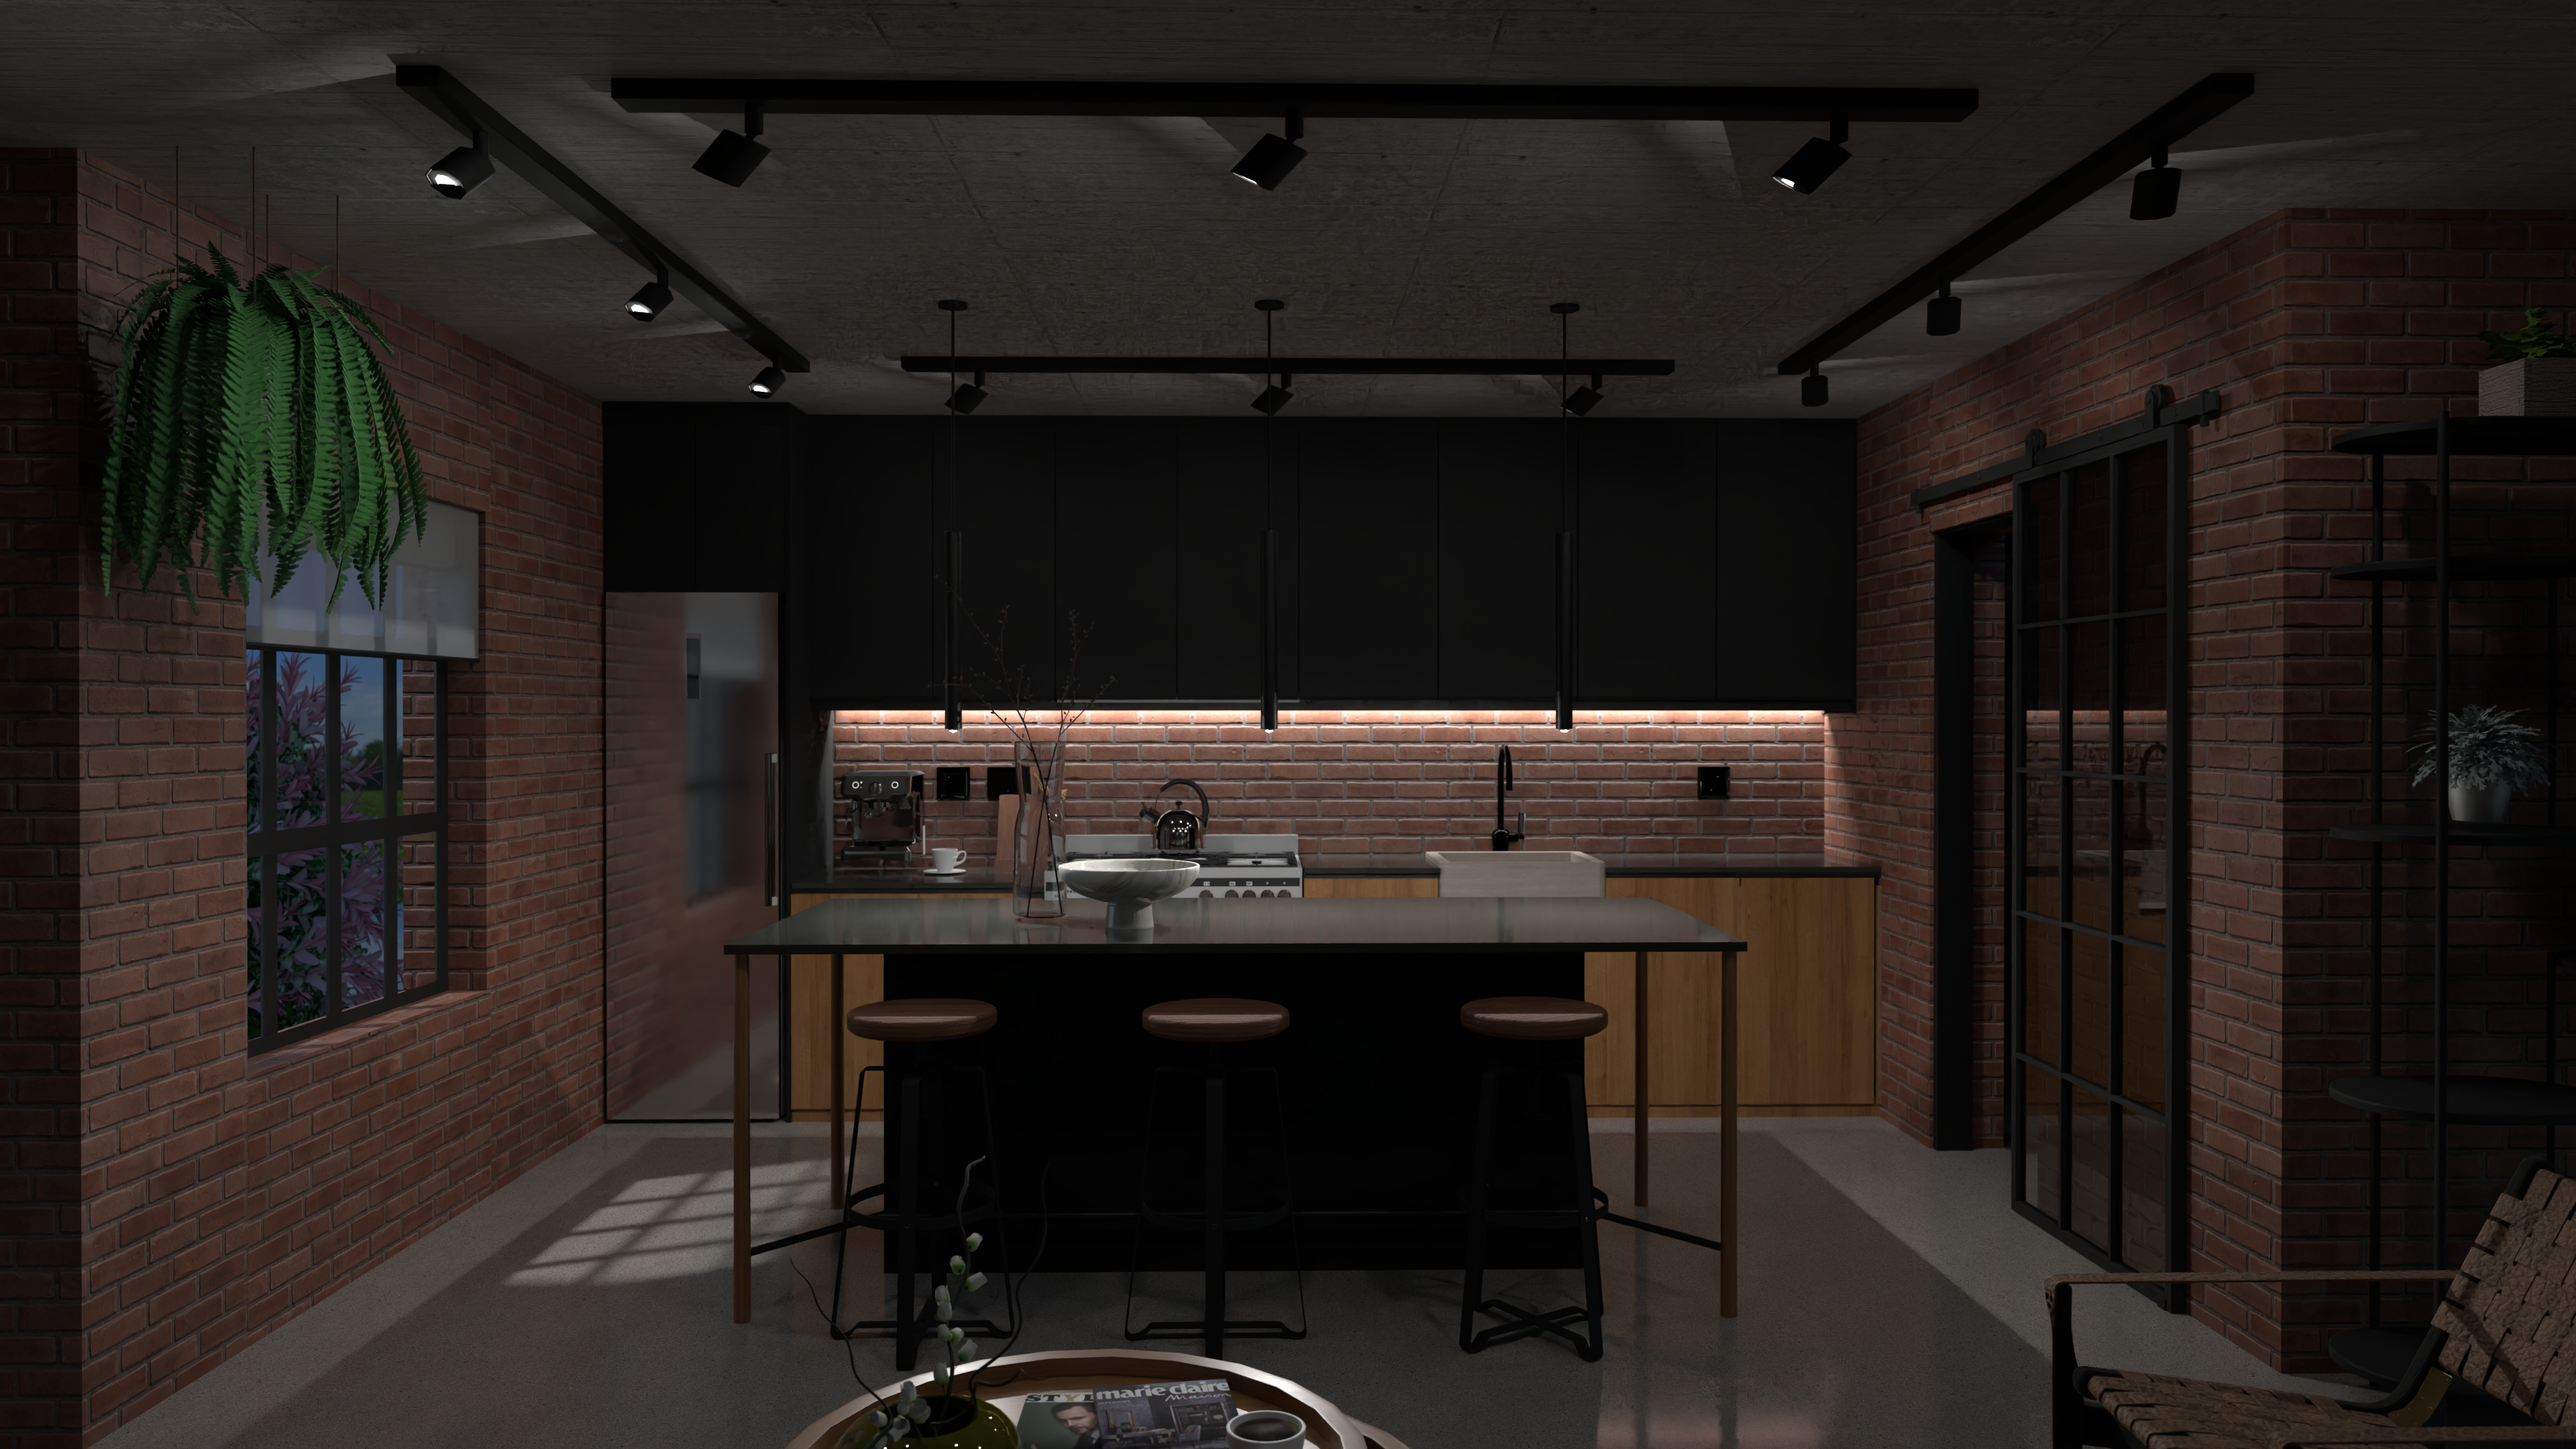 4K Dark Industrial Kitchen Render 10353760 by Candice Nero image